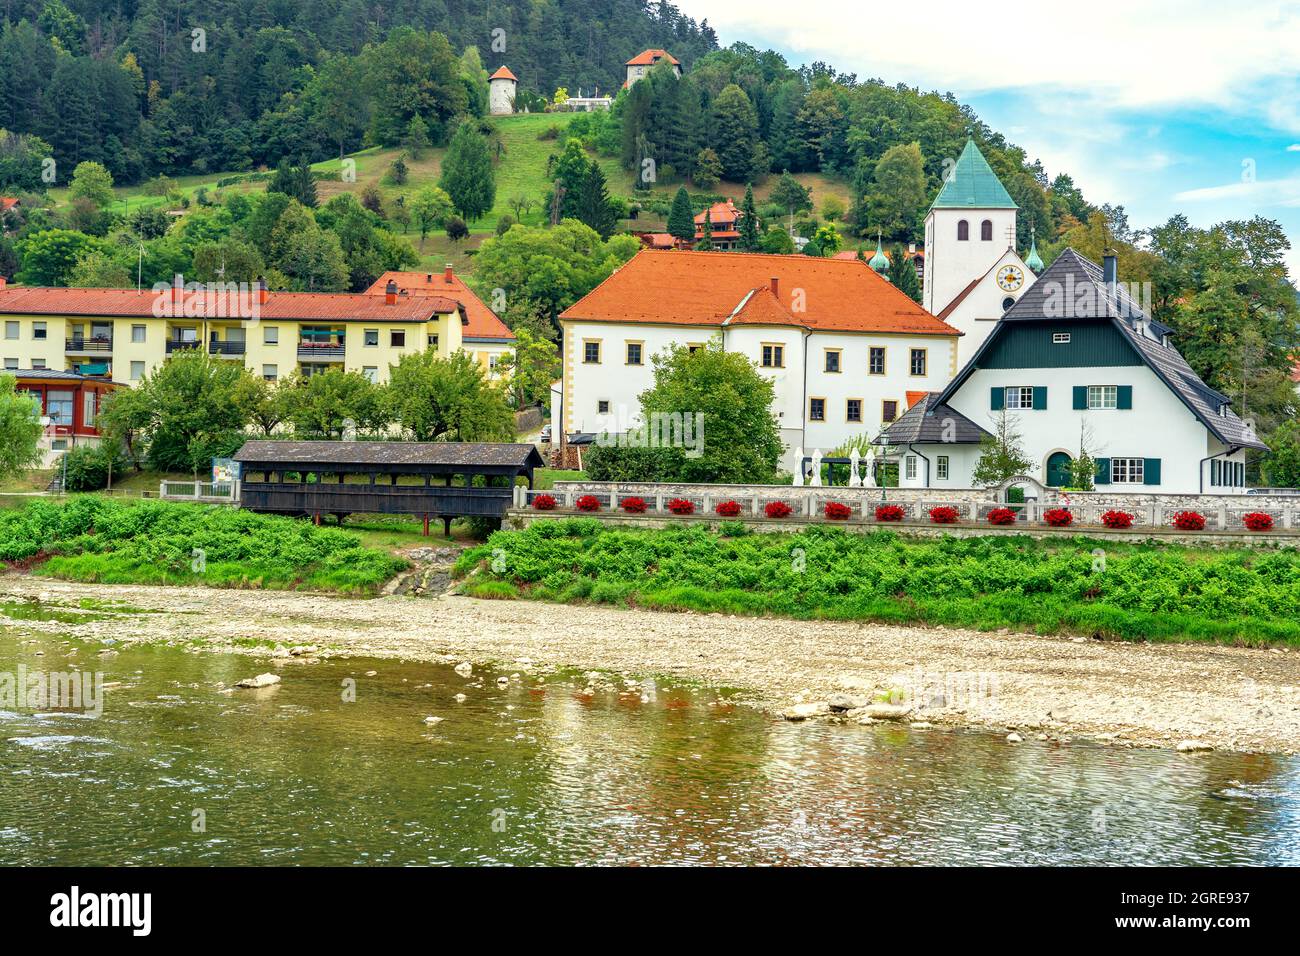 Wunderschöne Stadt Lasco in Slowenien mit dem Spica-Ufer. Stockfoto